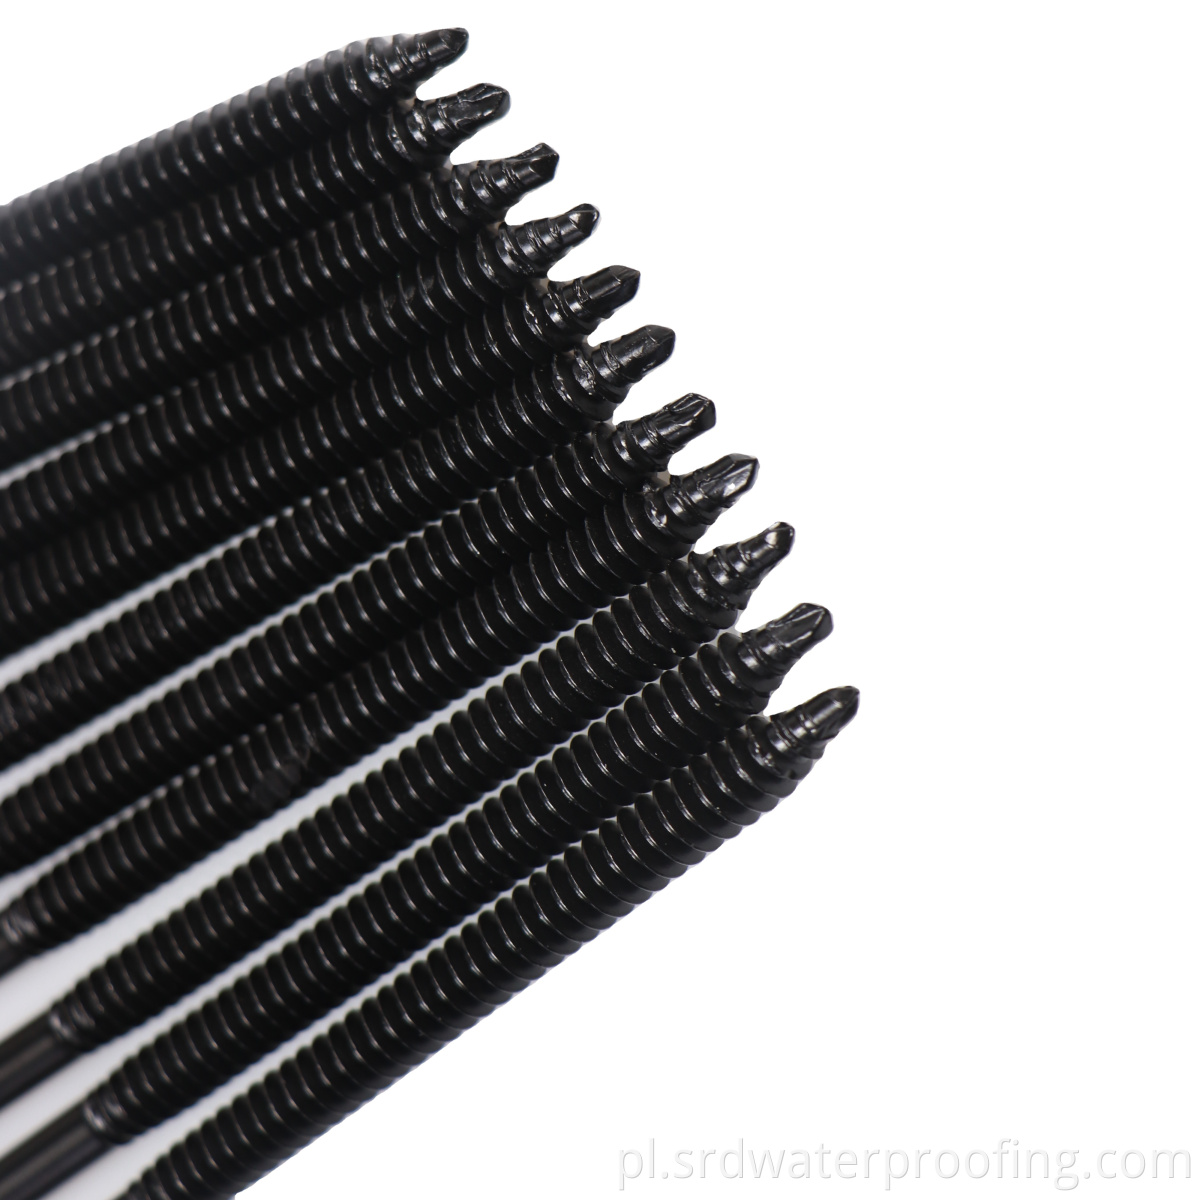 Black screws fasteners for roofing waterproofing membrane